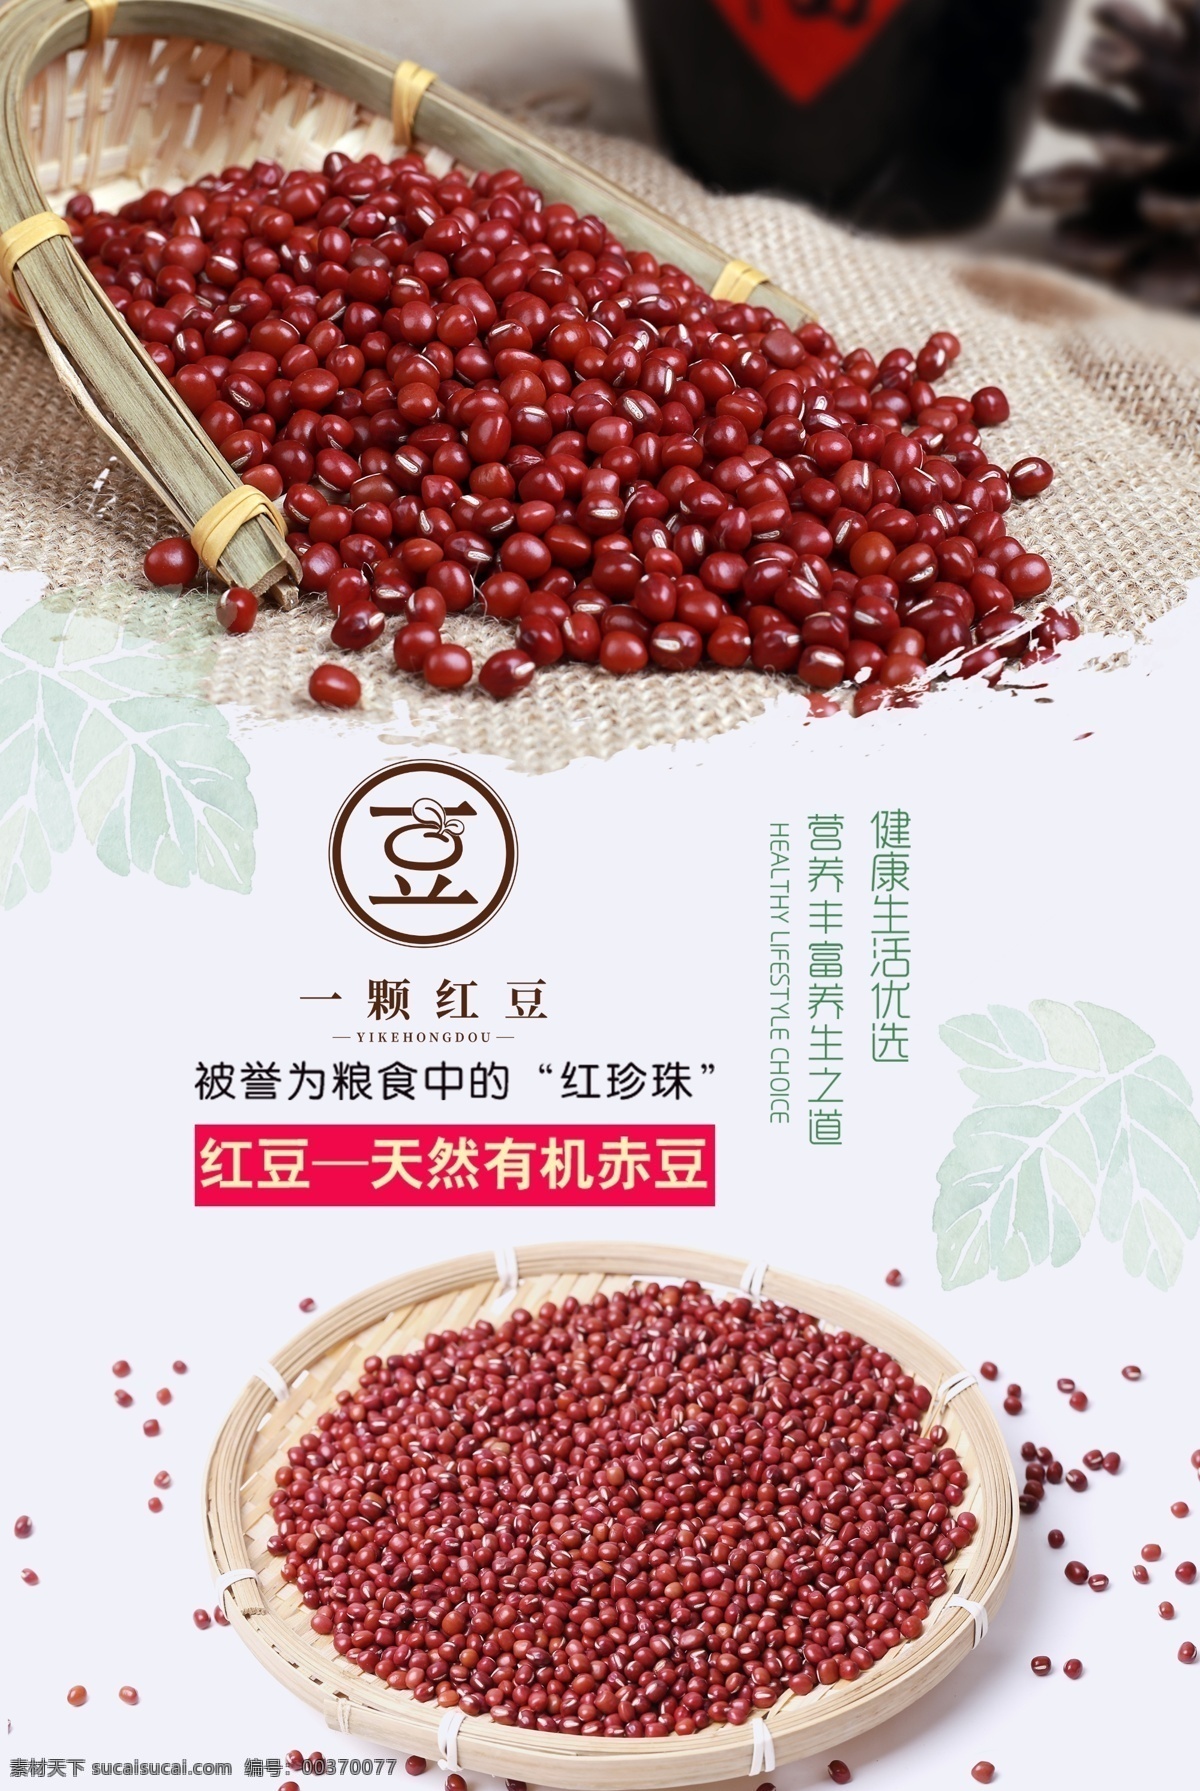 红豆海报设计 红豆 精品红豆 赤豆 五谷杂粮 养生红豆 驱寒红豆 农产品 农家红豆 天然红豆 分层